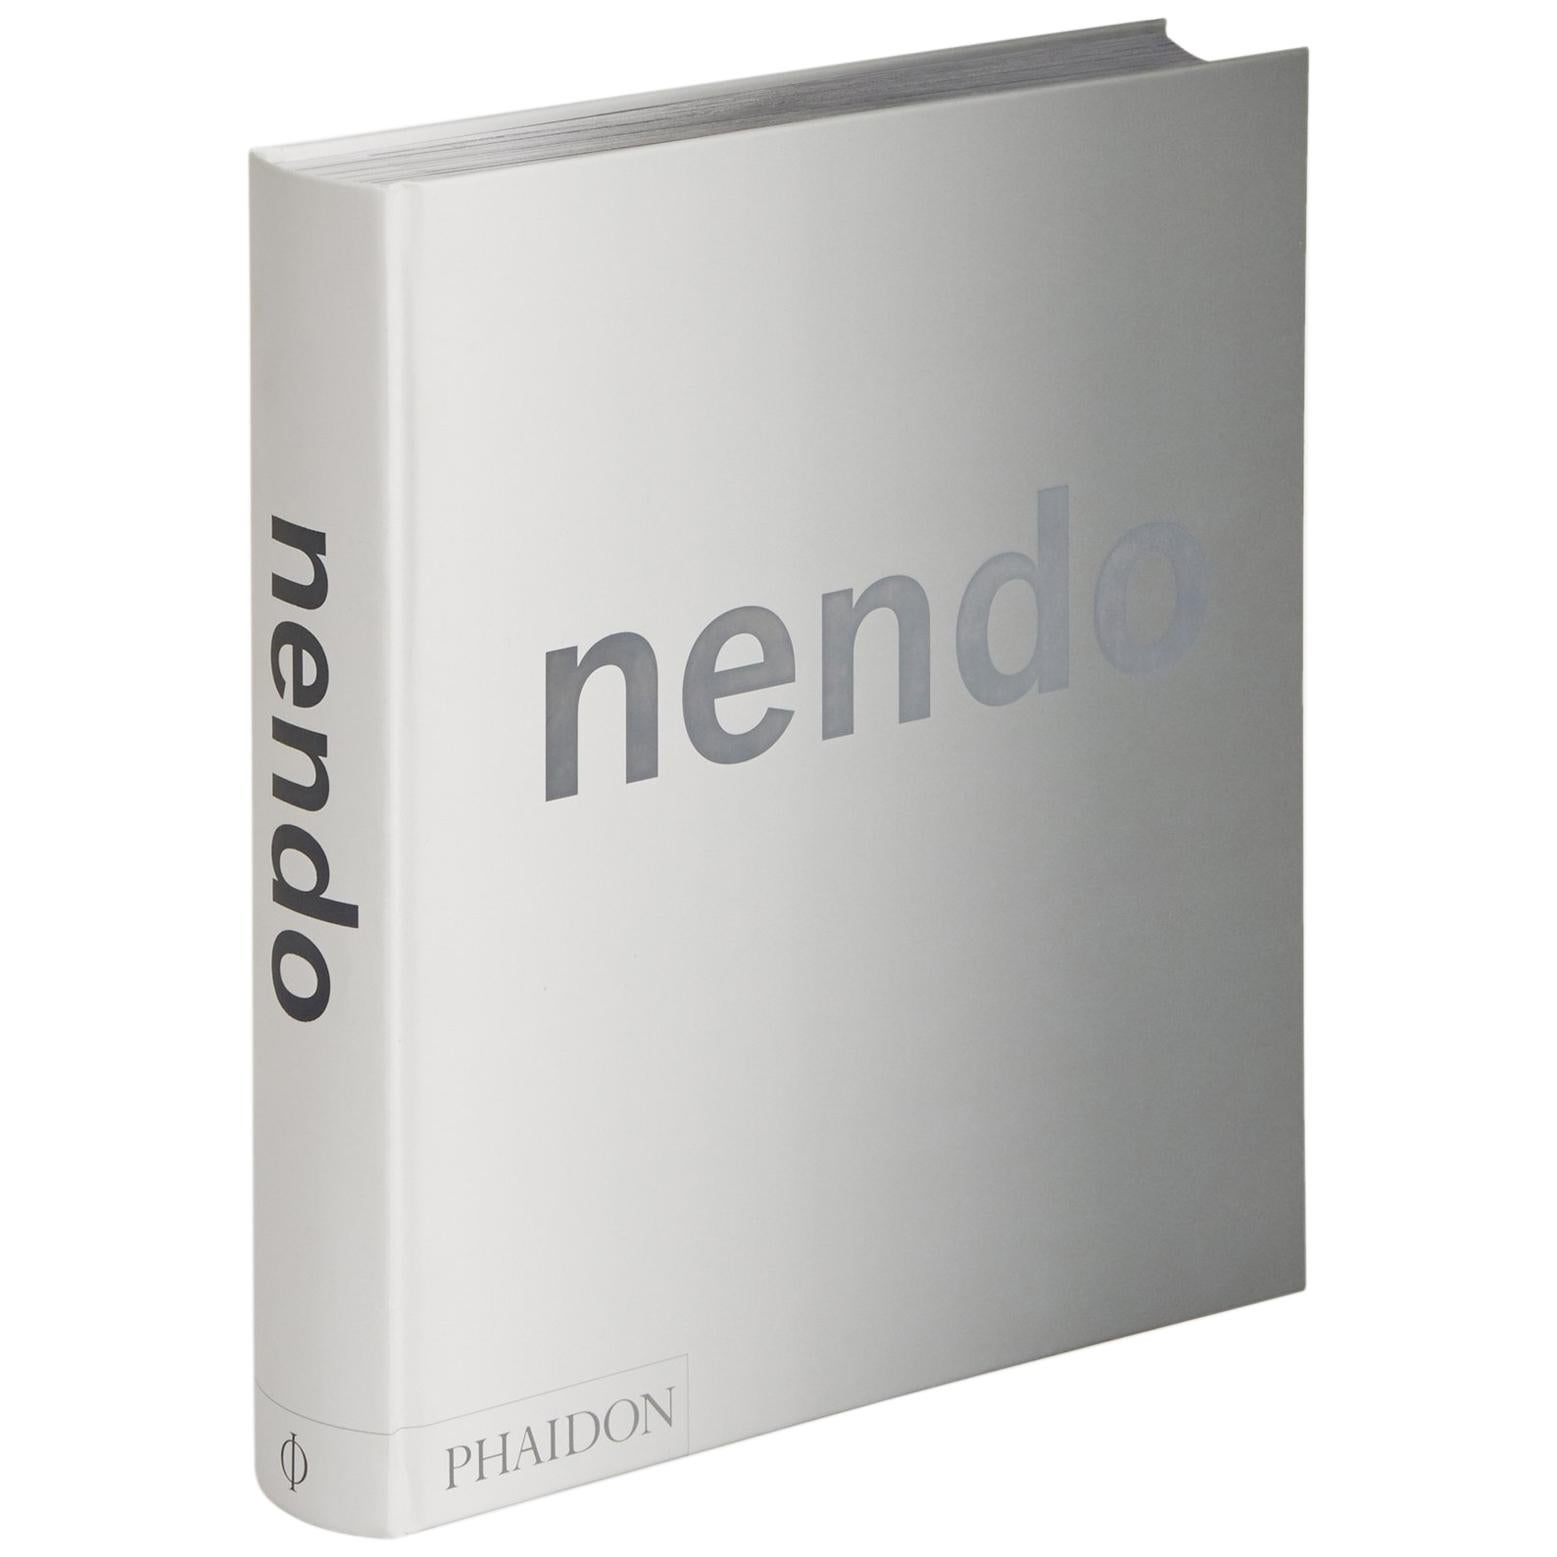 Nendo - L'ultime monographie sur le légendaire studio de design multidisciplinaire